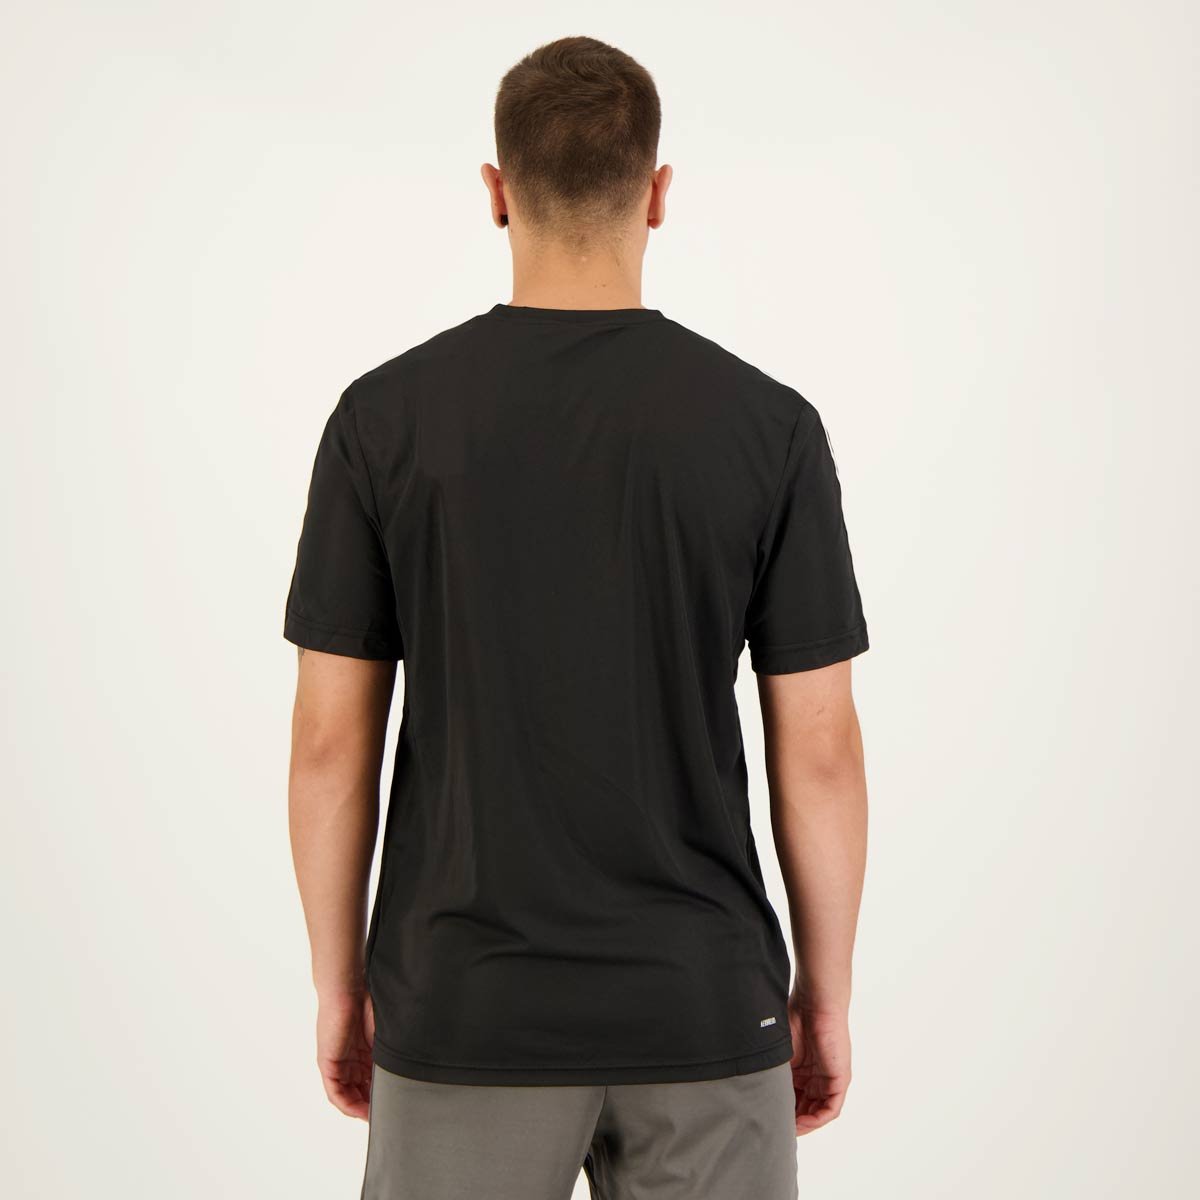 Camiseta Adidas Essentials 3 Listras Preta e Branca Preto 3